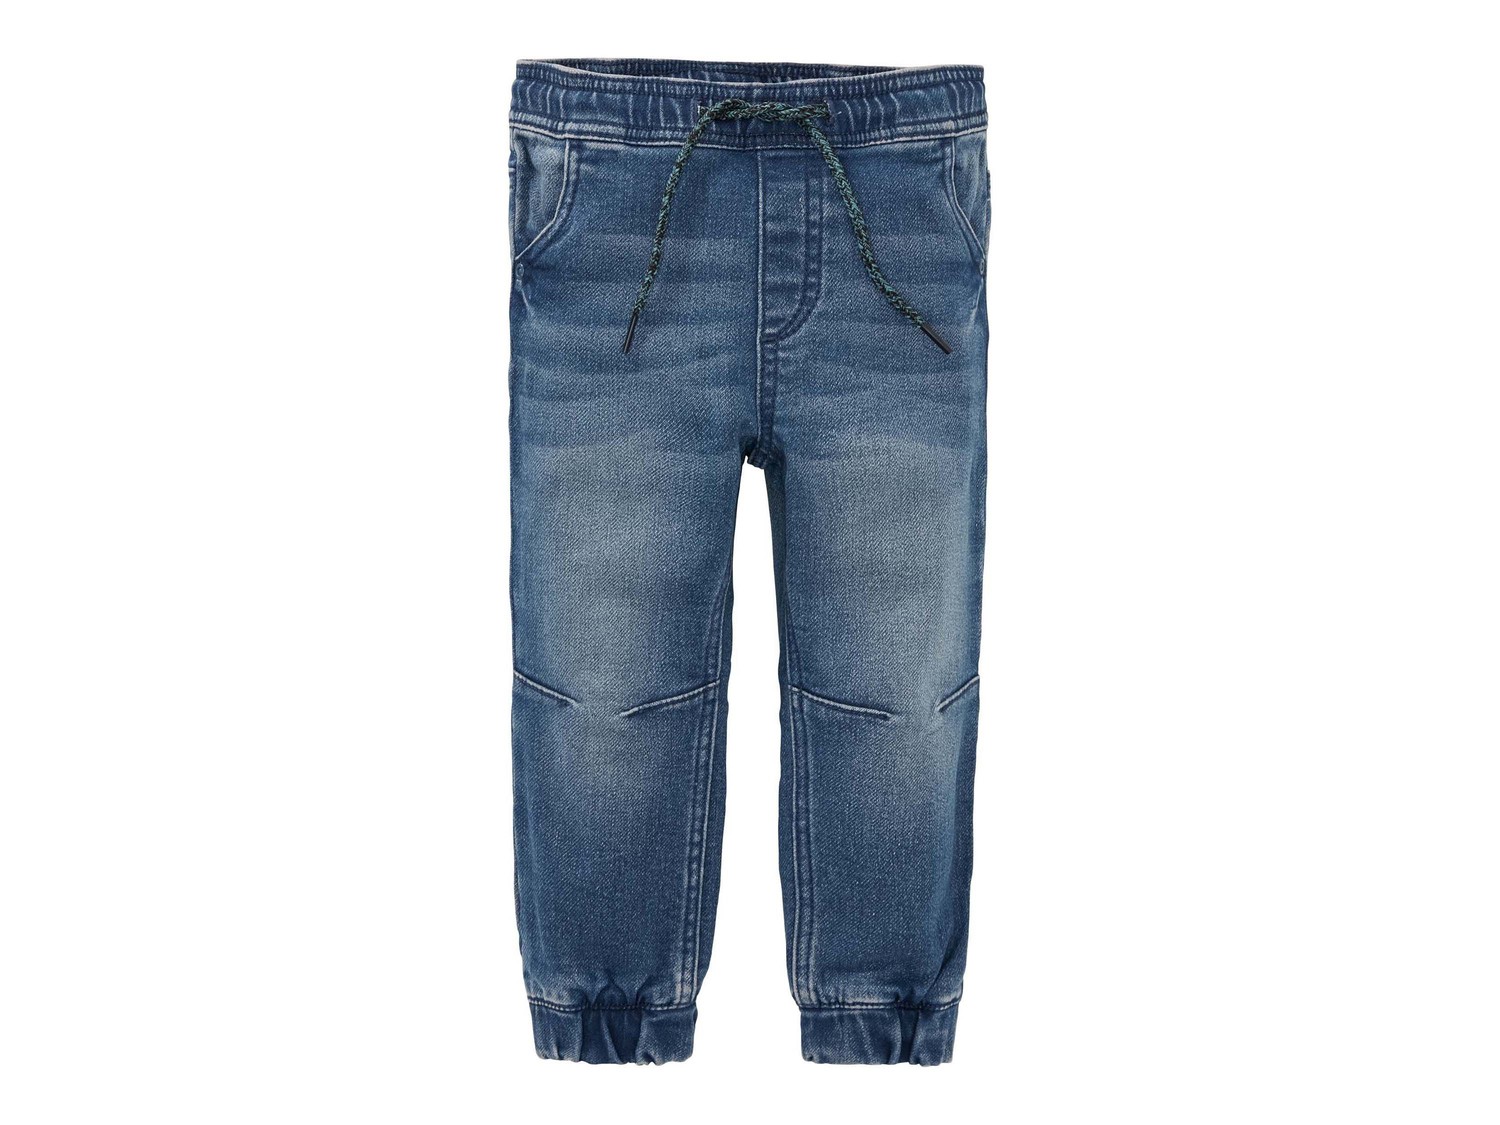 Joggers in jeans da bambino Lupilu, prezzo 7.99 &#8364; 
Misure: 1-6 anni
- ...